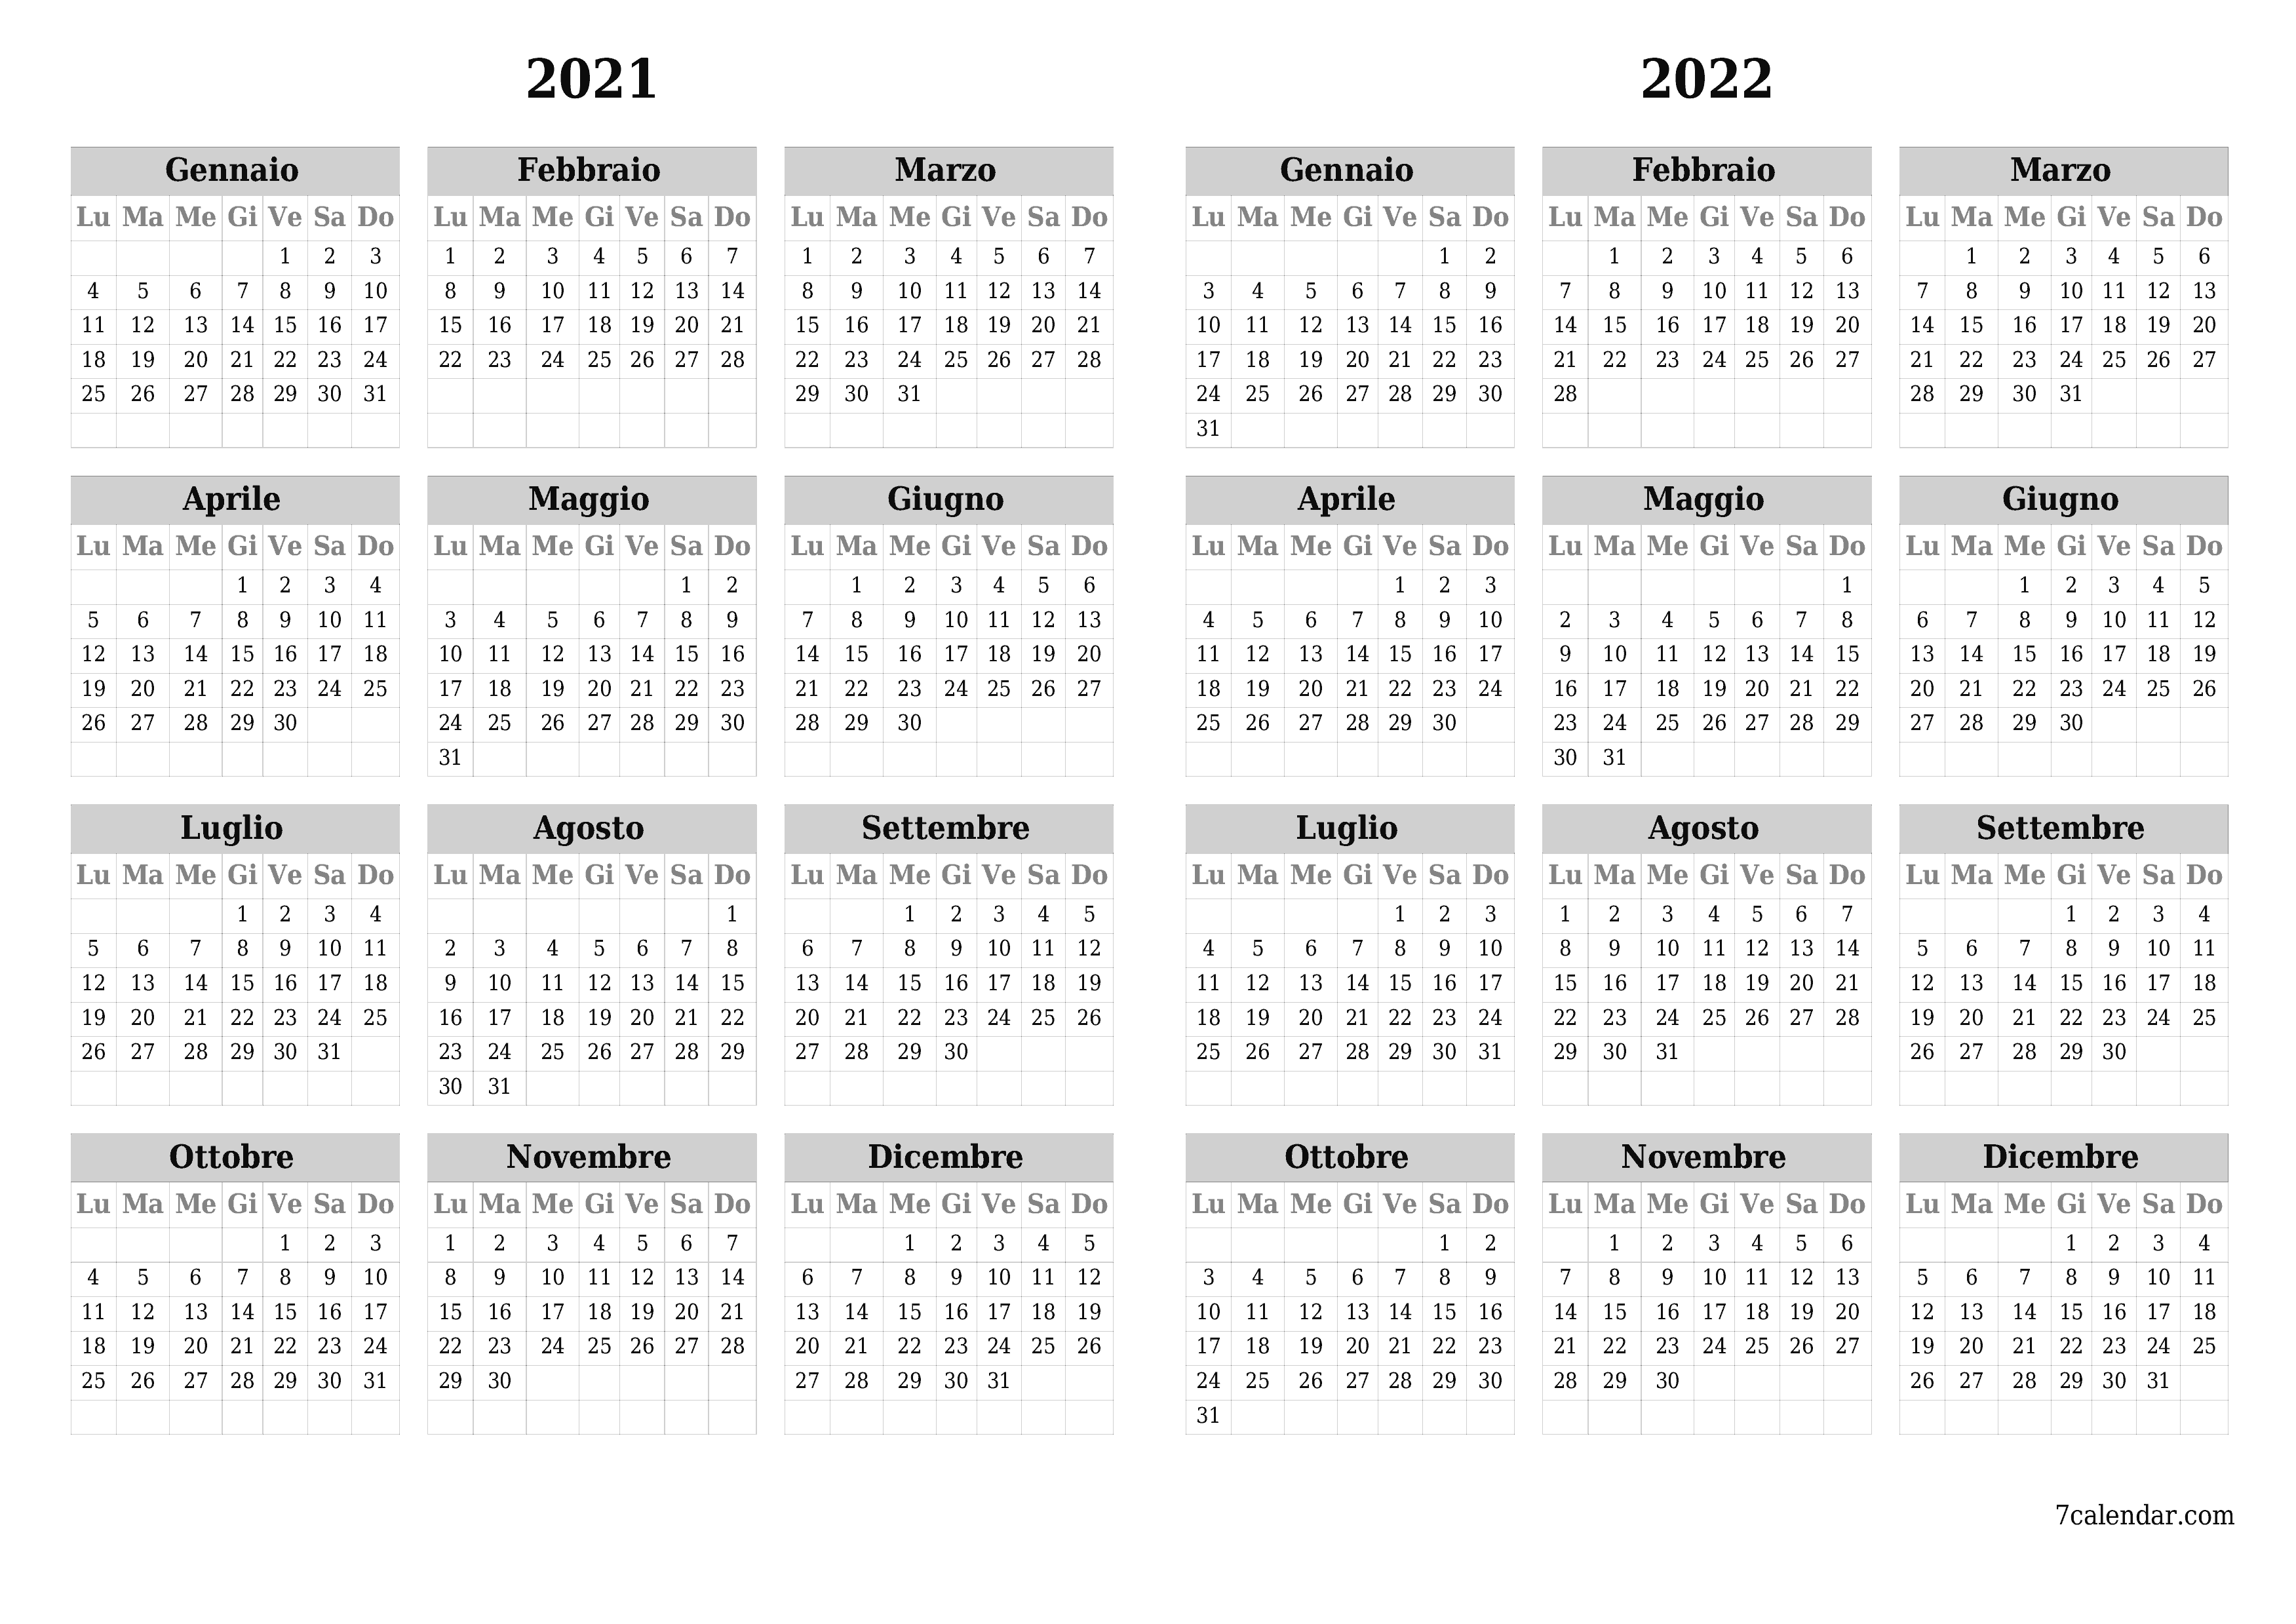  stampabile da parete modello di gratuitoorizzontale Annuale calendario Dicembre (Dic) 2021